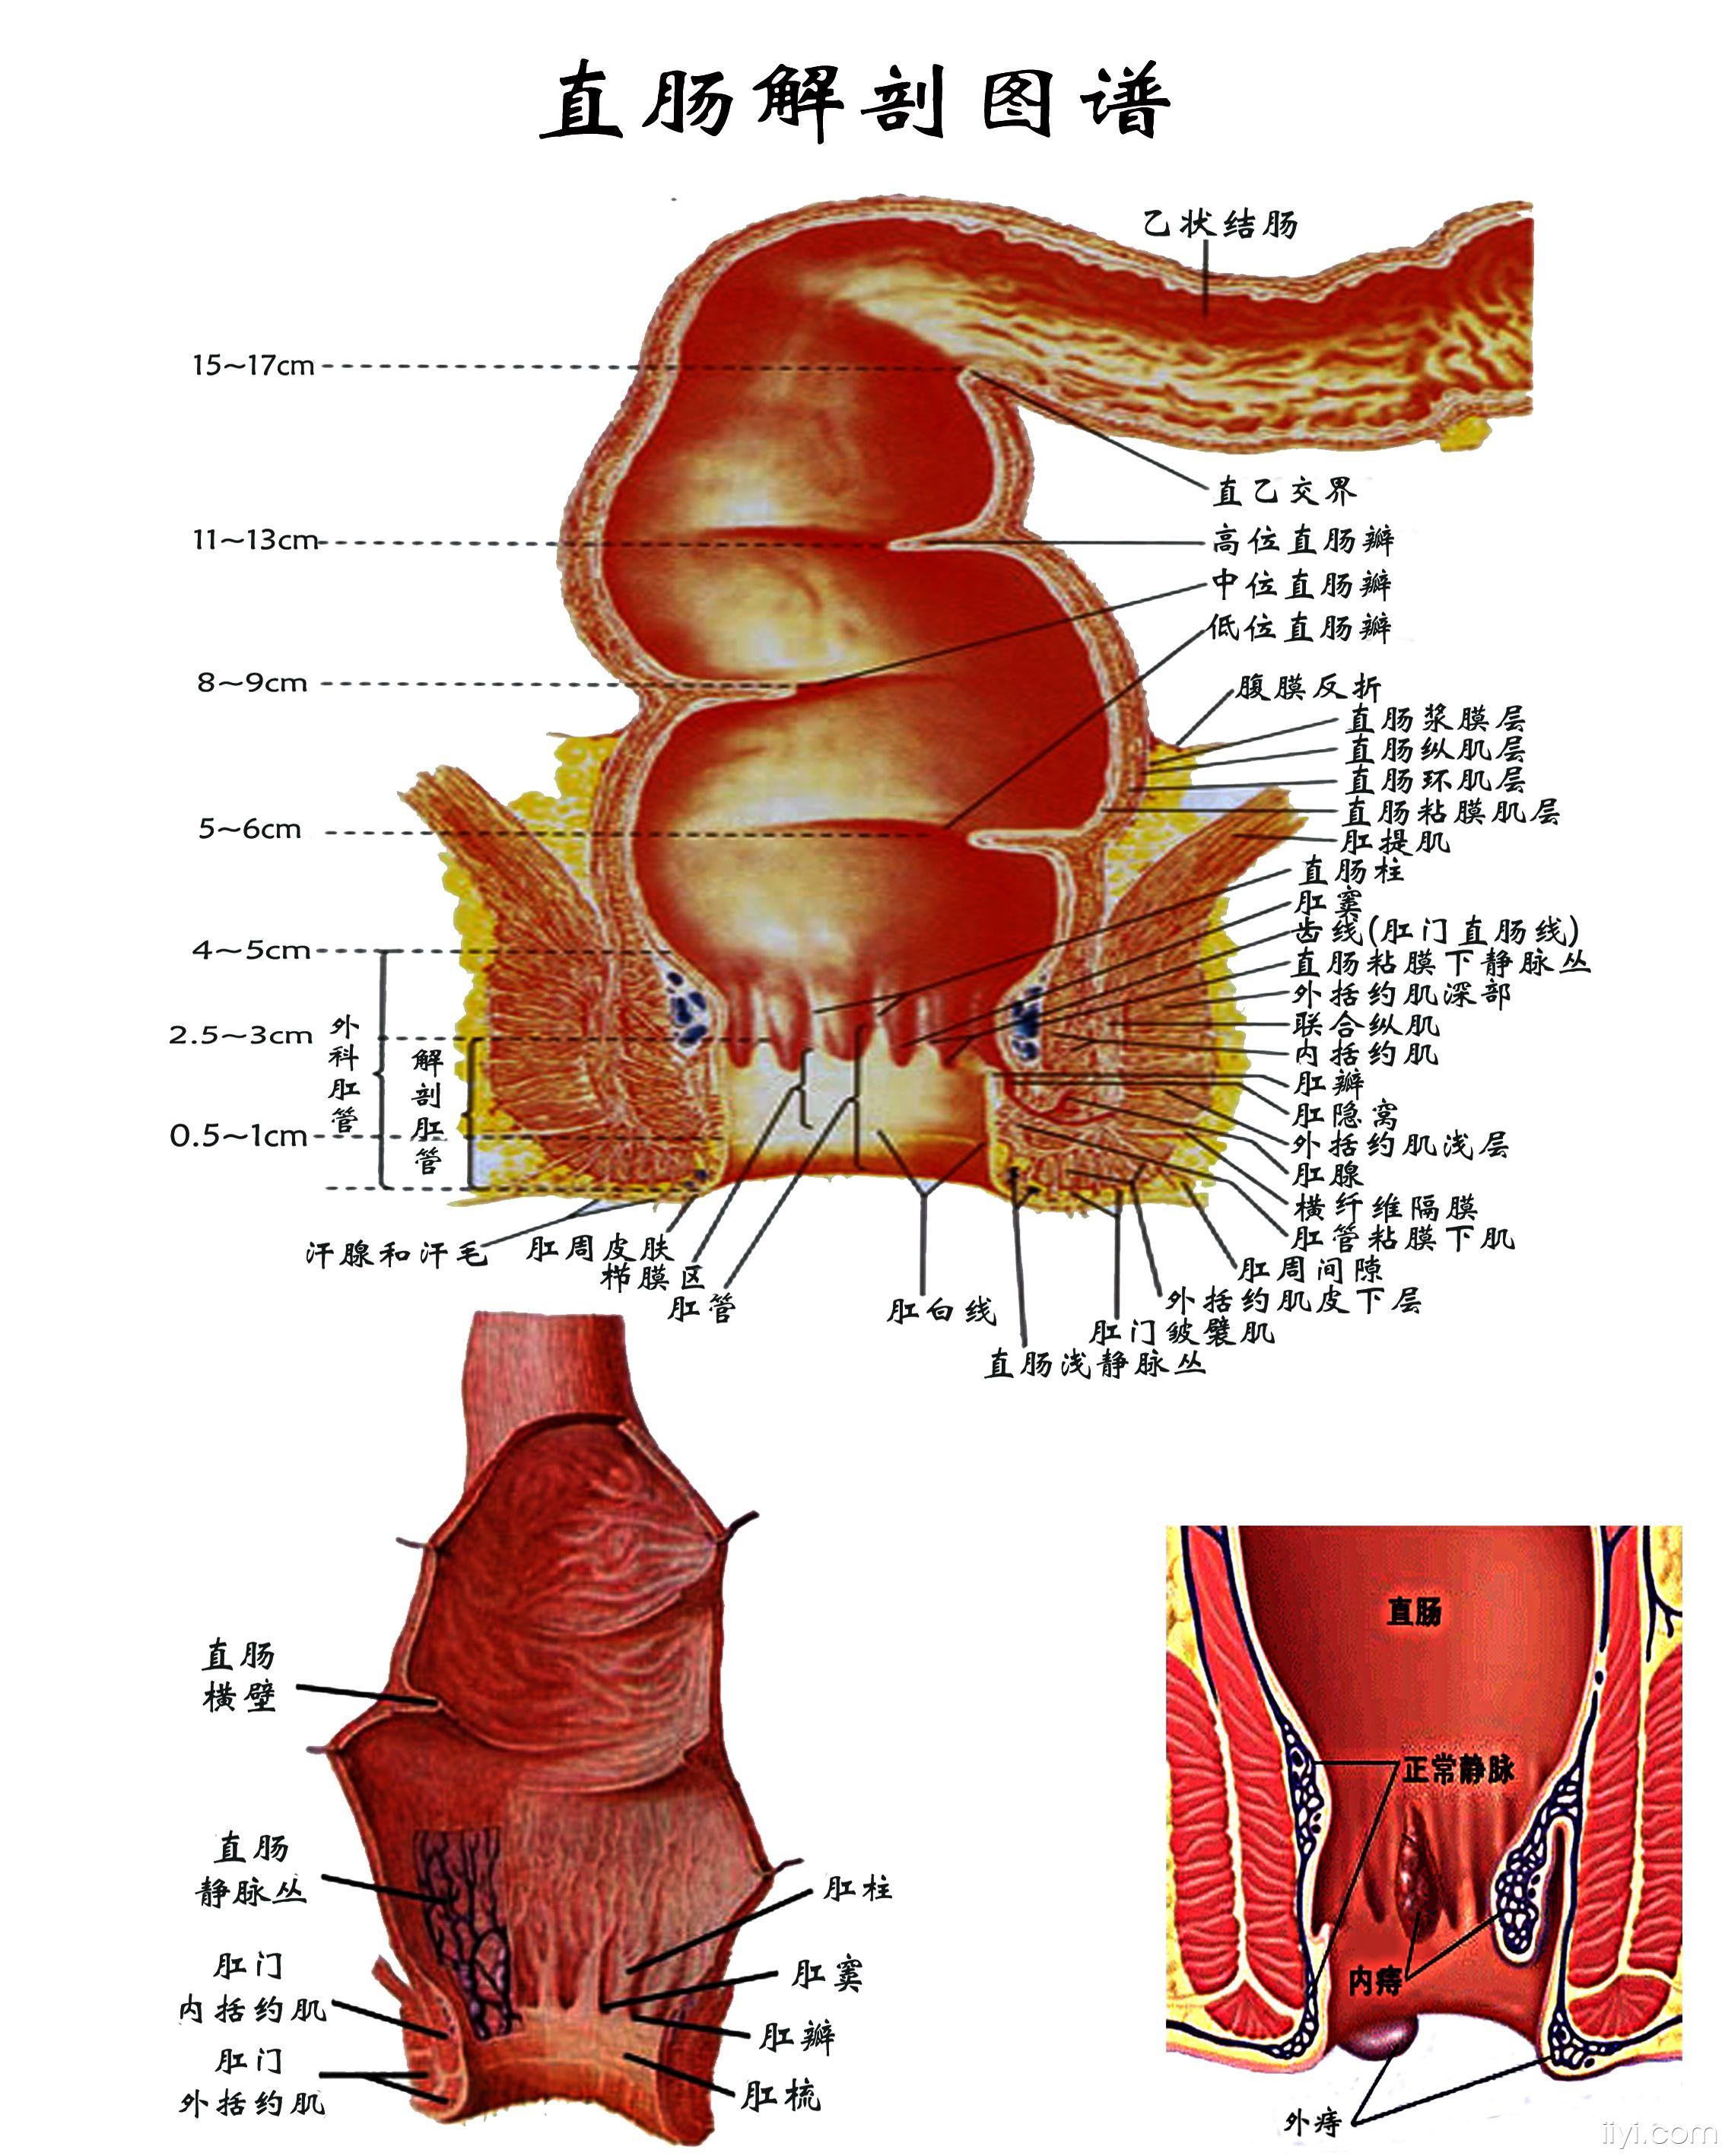 想在科室里挂两张肛肠解剖图给病人解释病情时好理解点